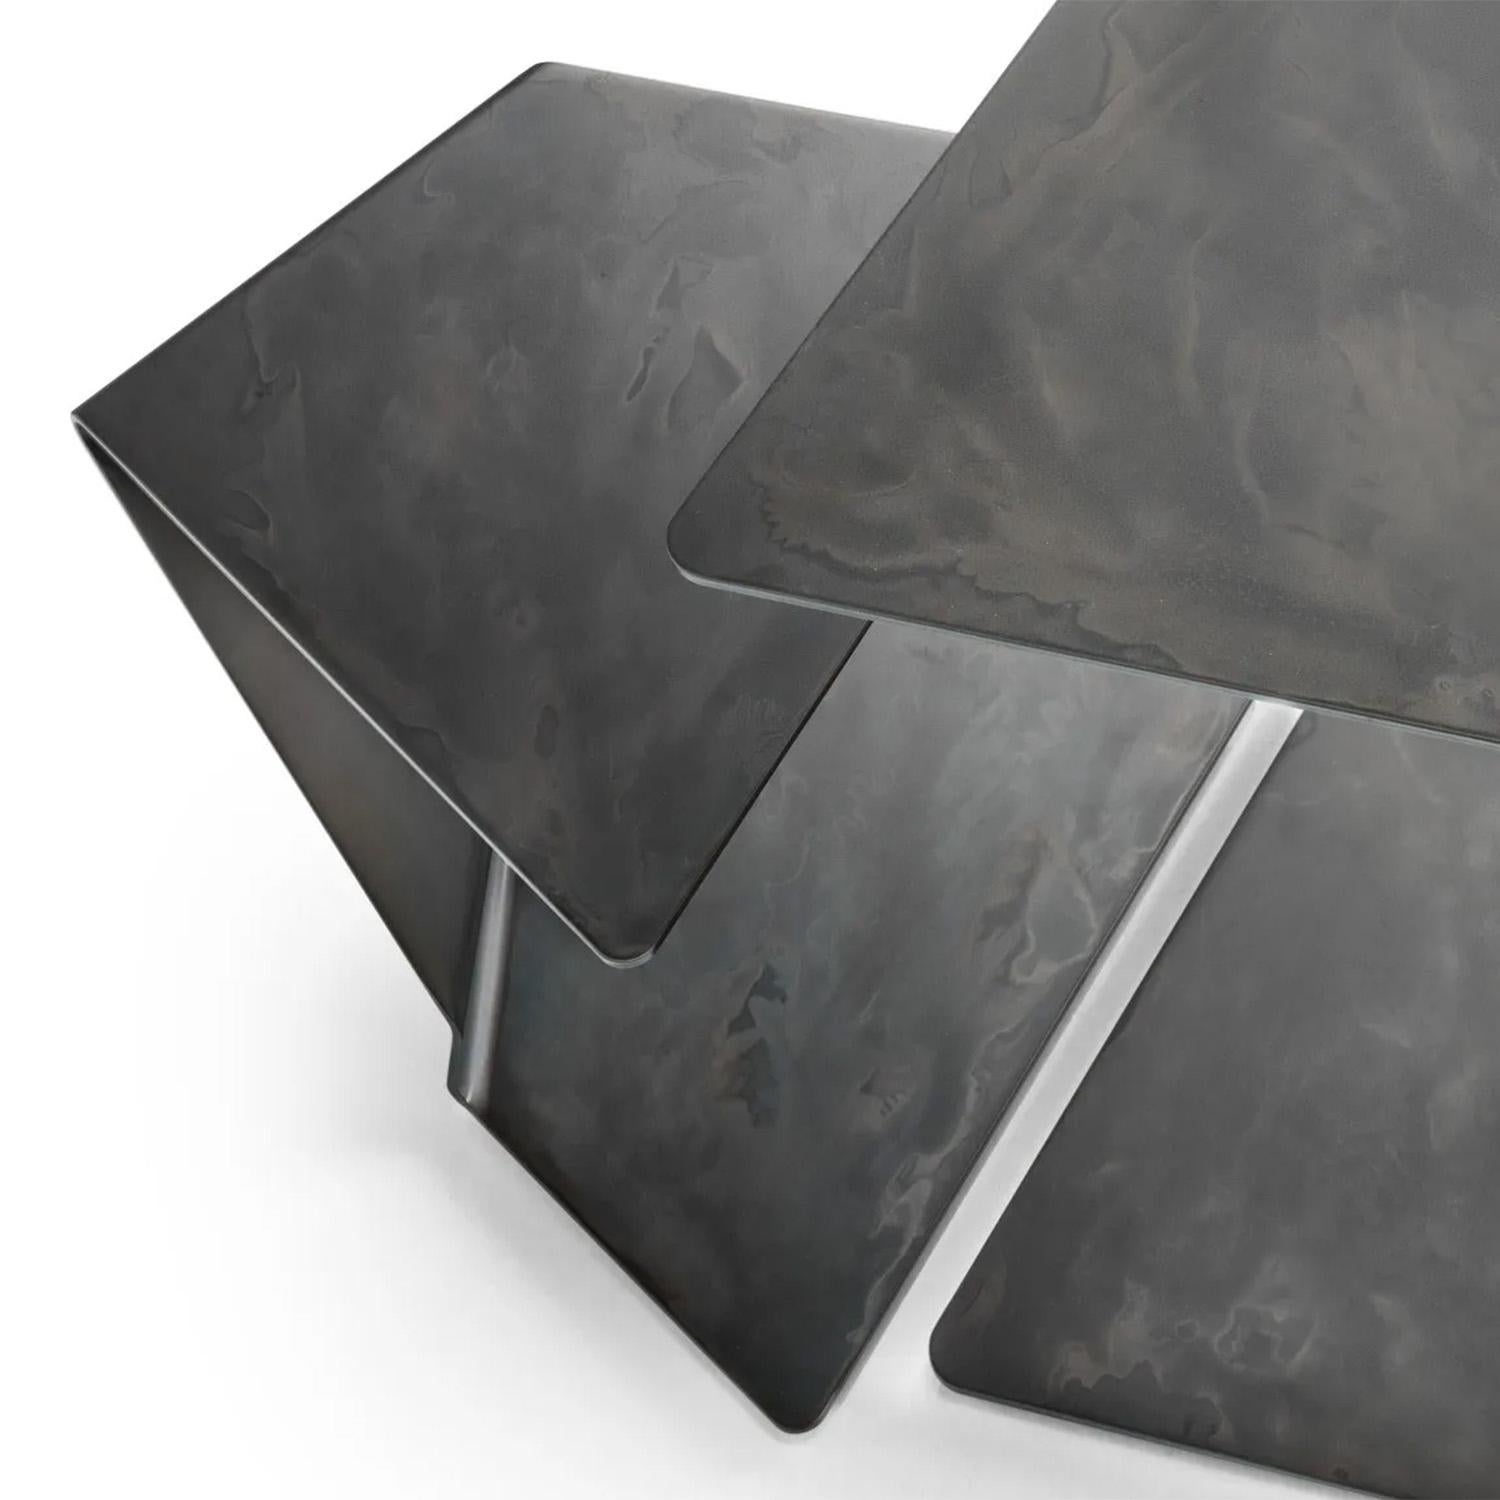 Table d'appoint Initial Metal Medium 
avec toute la structure en métal bandé.